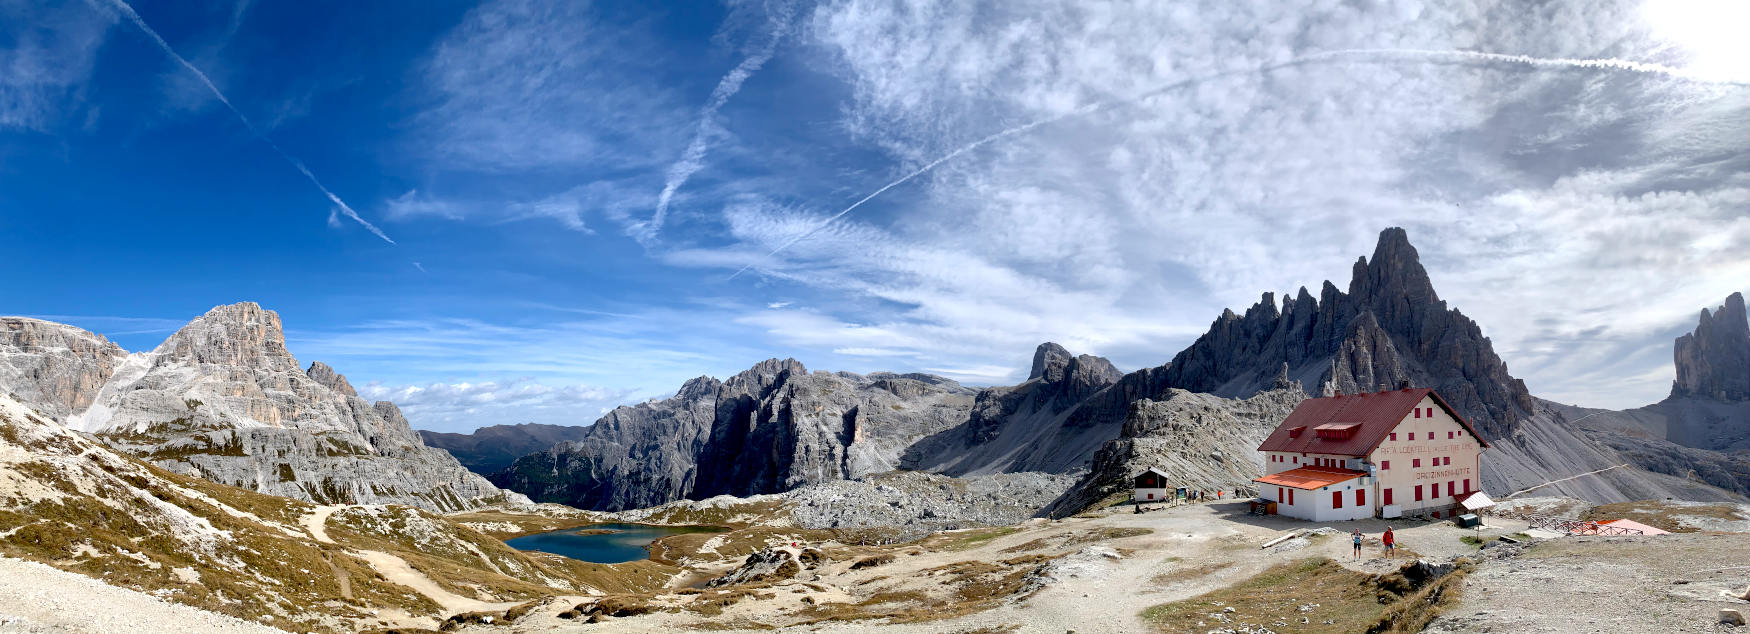 Panoramaufnahme: Drei-Zinnen-Hütte vor alpiner Kulisse